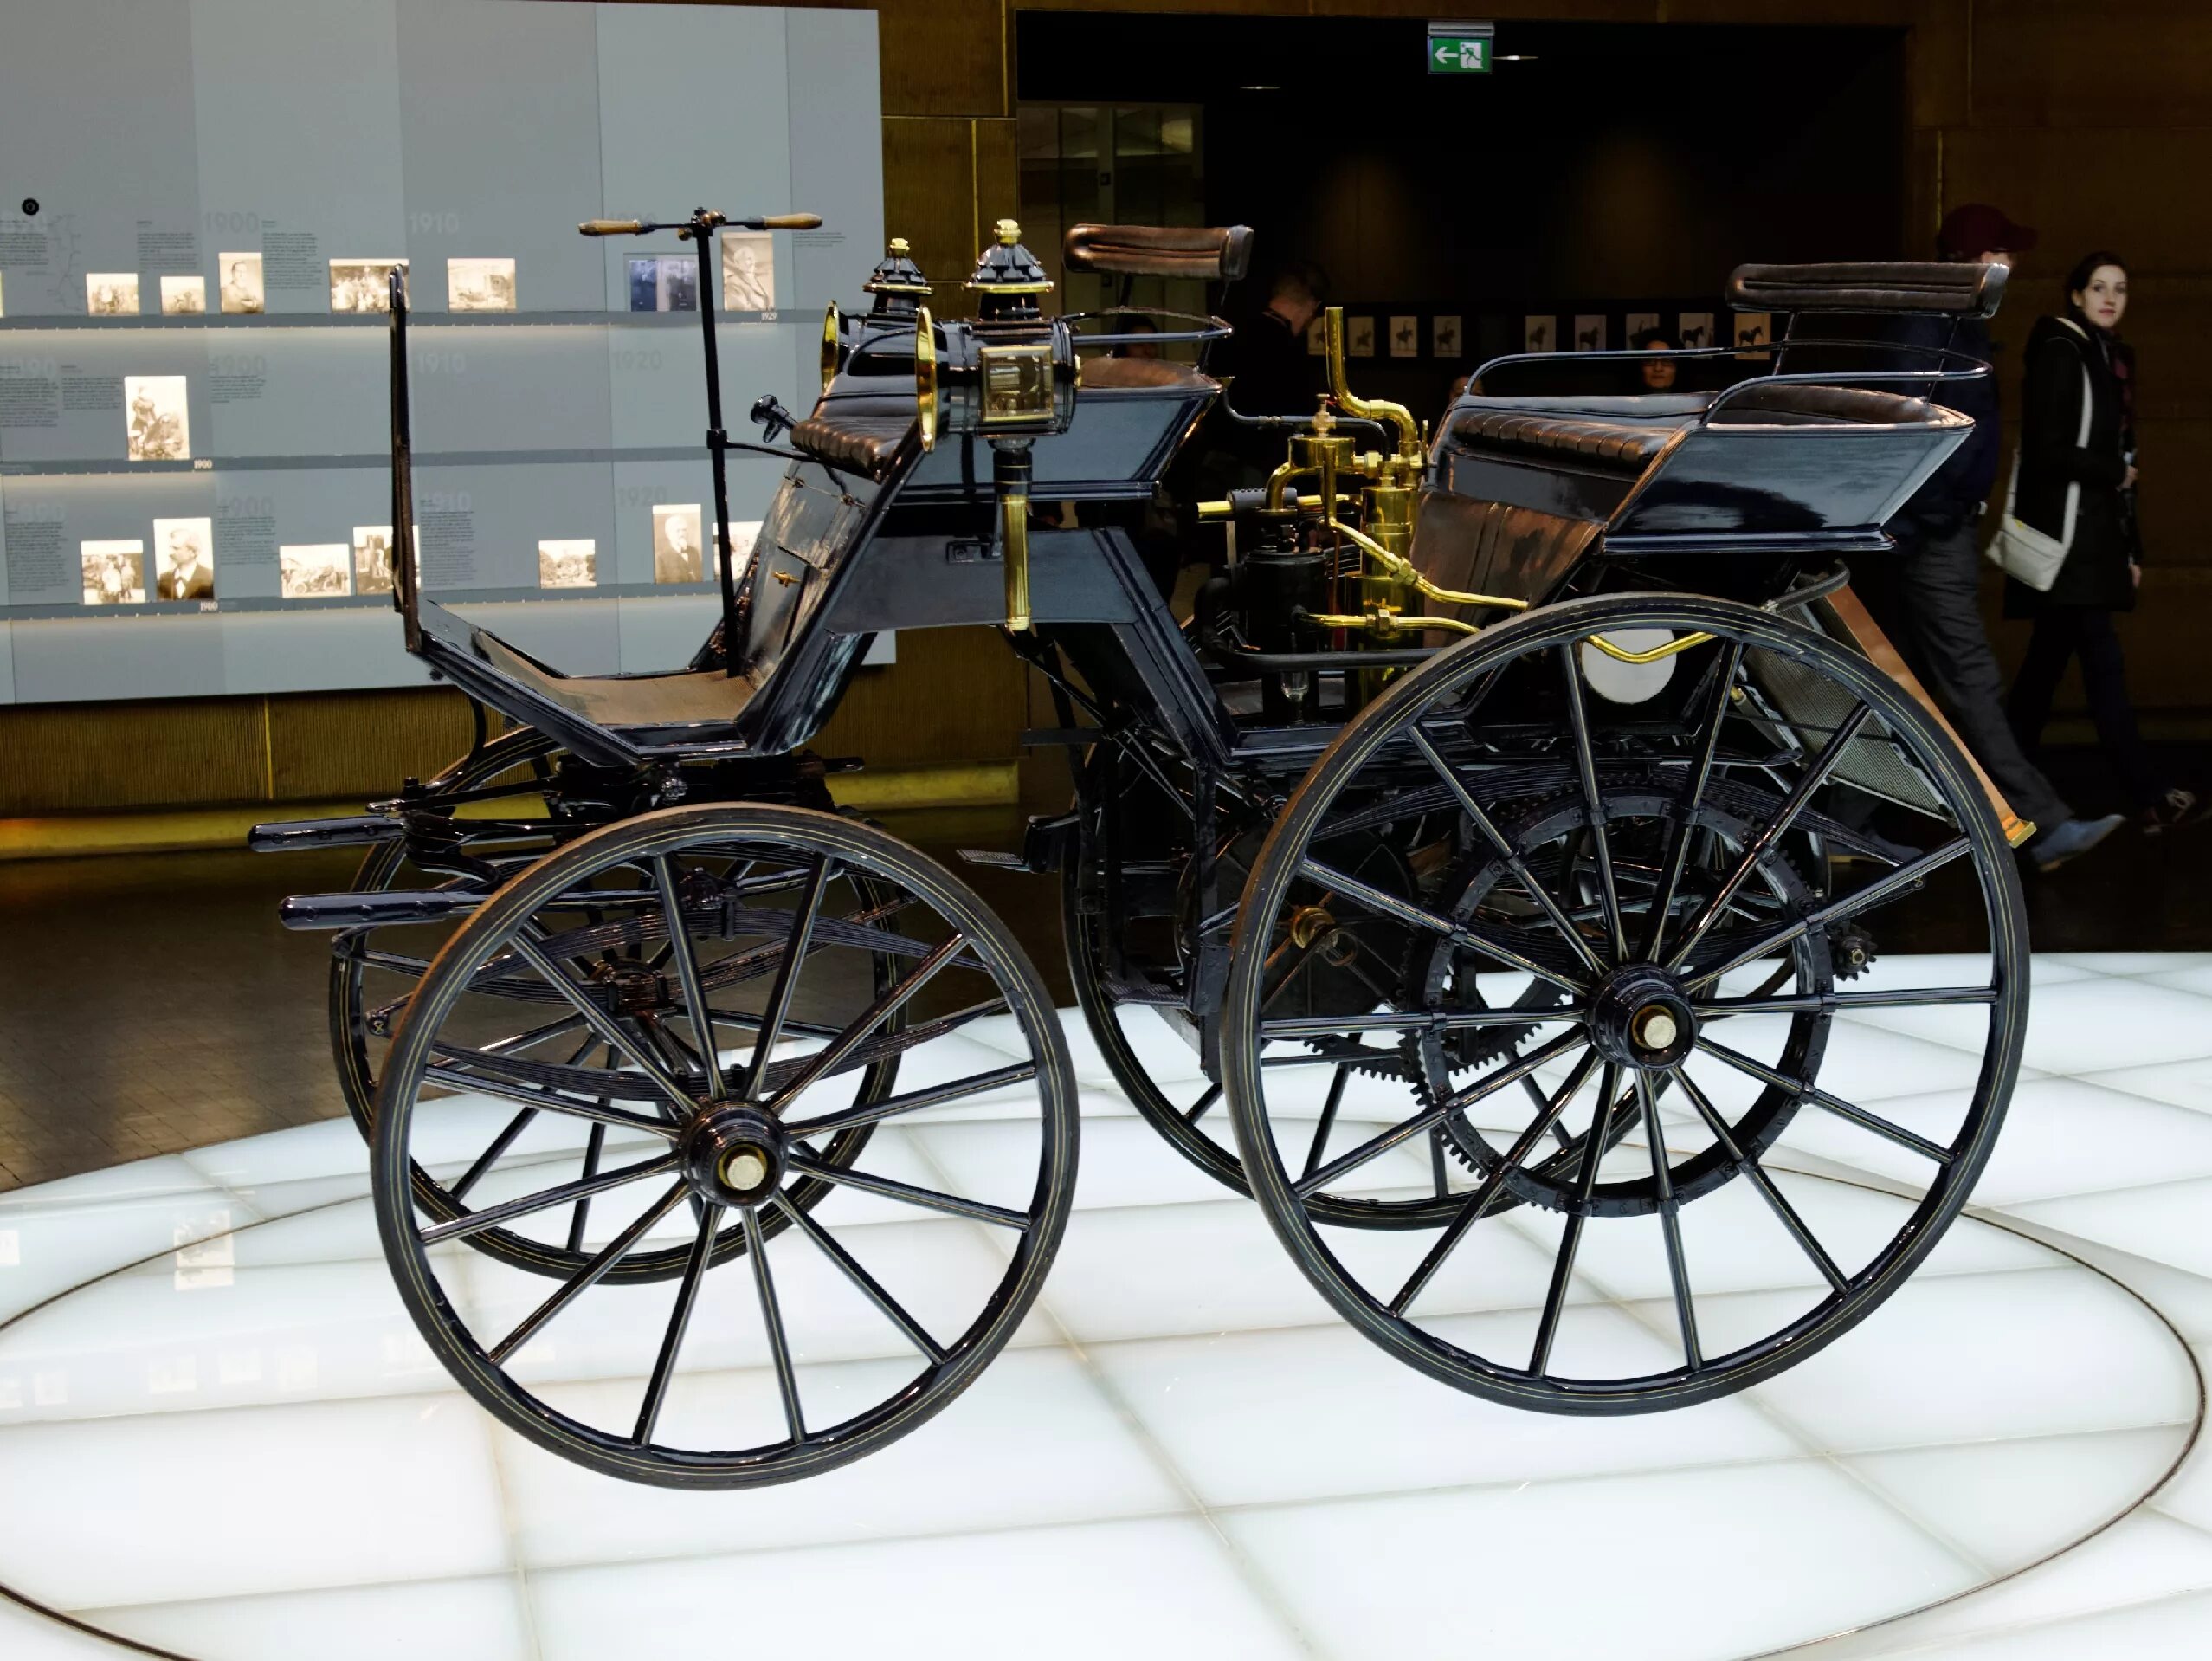 Выпущен первый в мире. Готлиб Даймлер автомобиль 1889. Первый Мерседес Бенц 1886. Готлиб Даймлер первый автомобиль. Даймлер 1886.